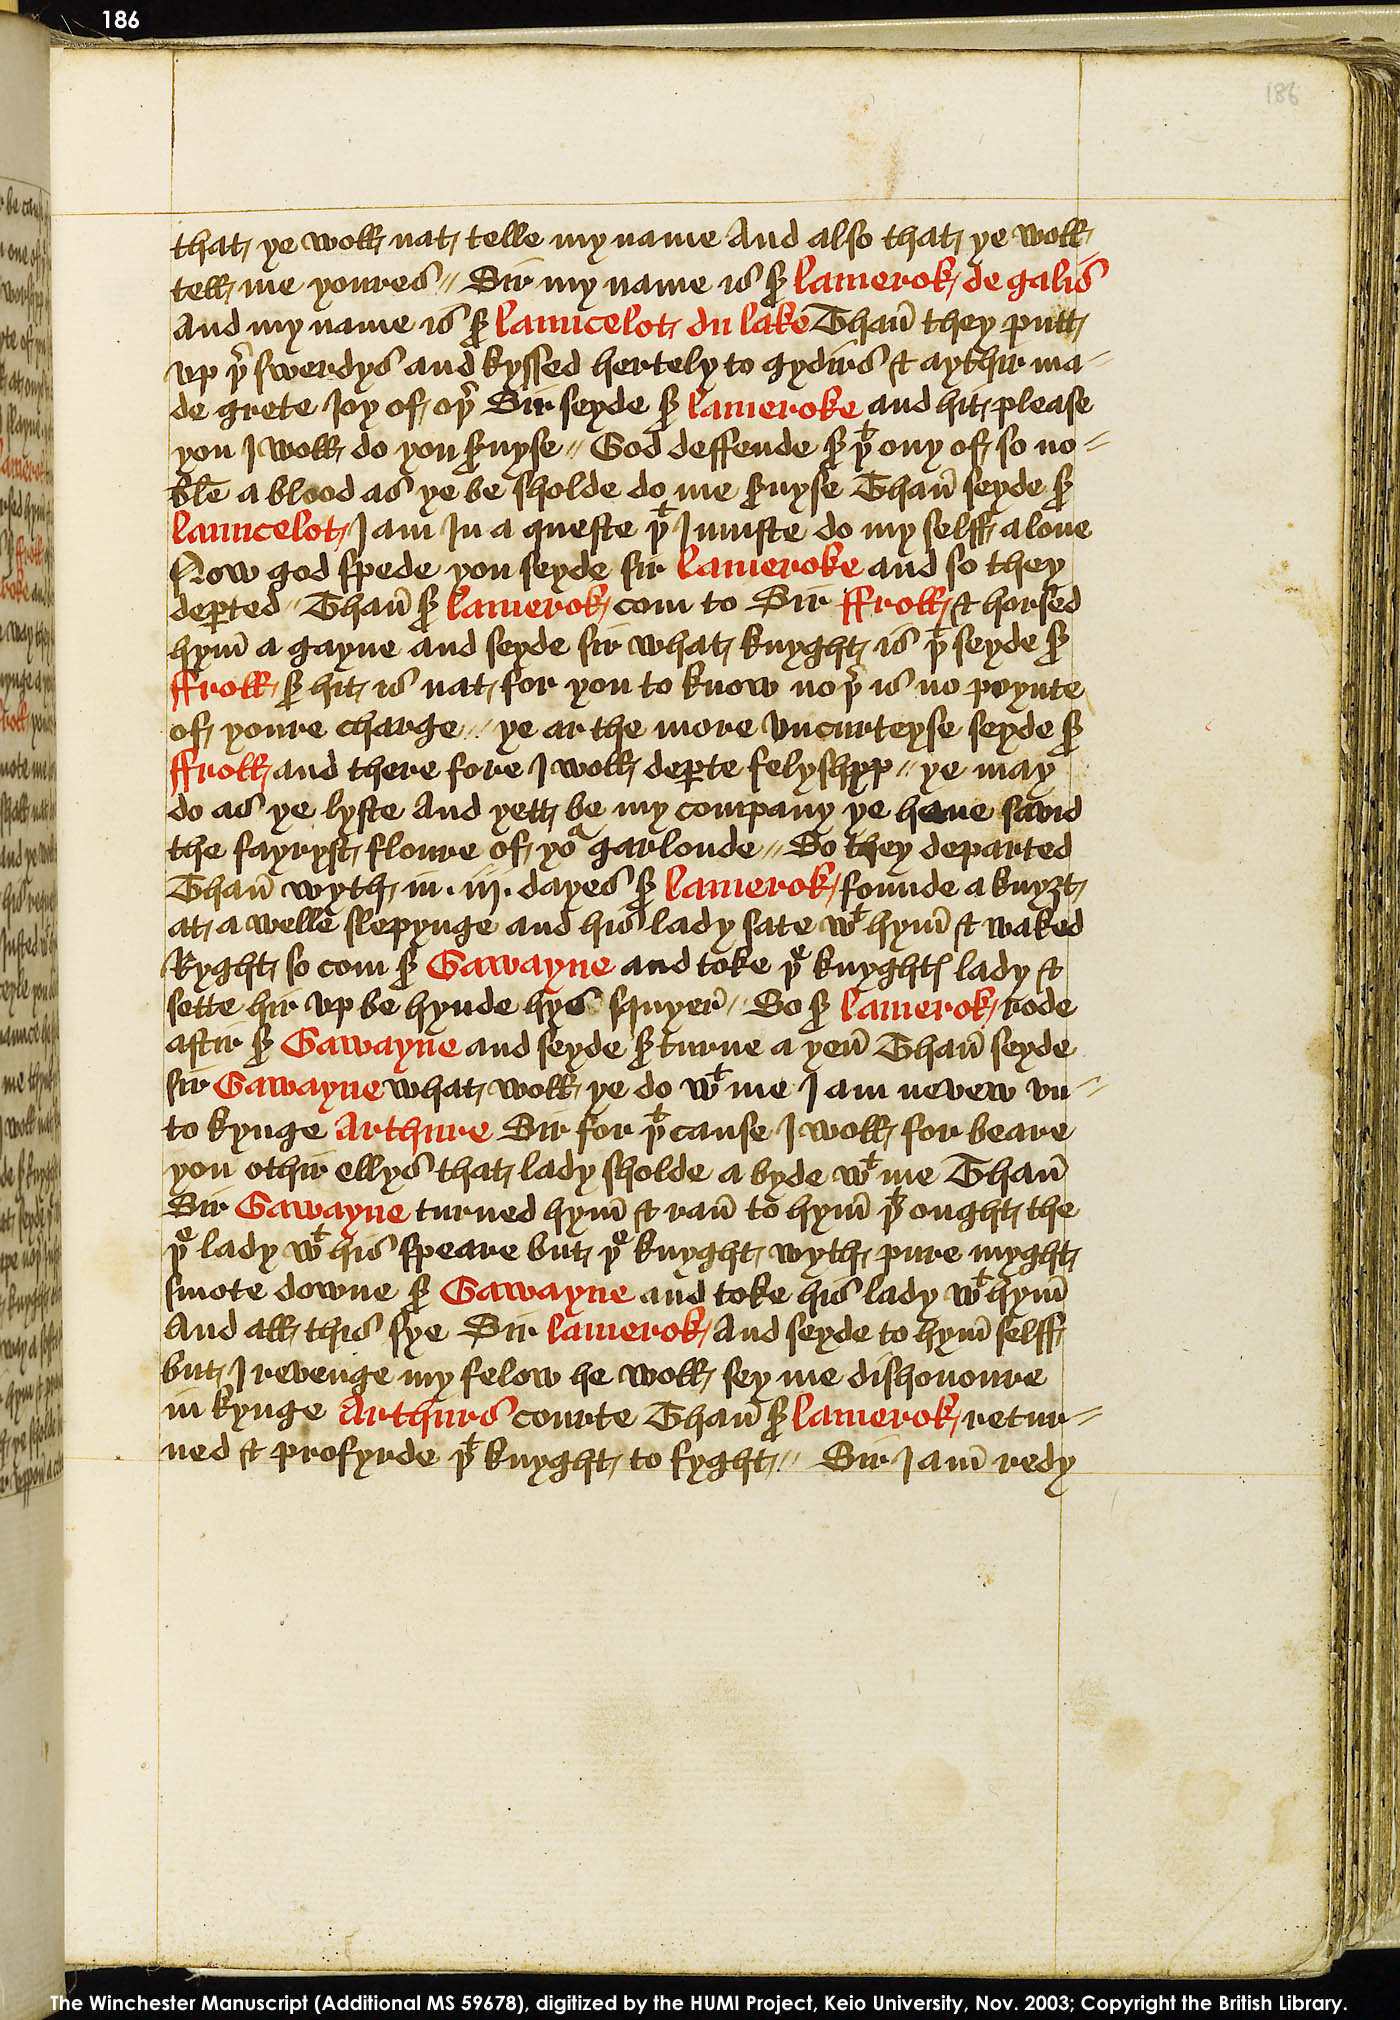 Folio 186r